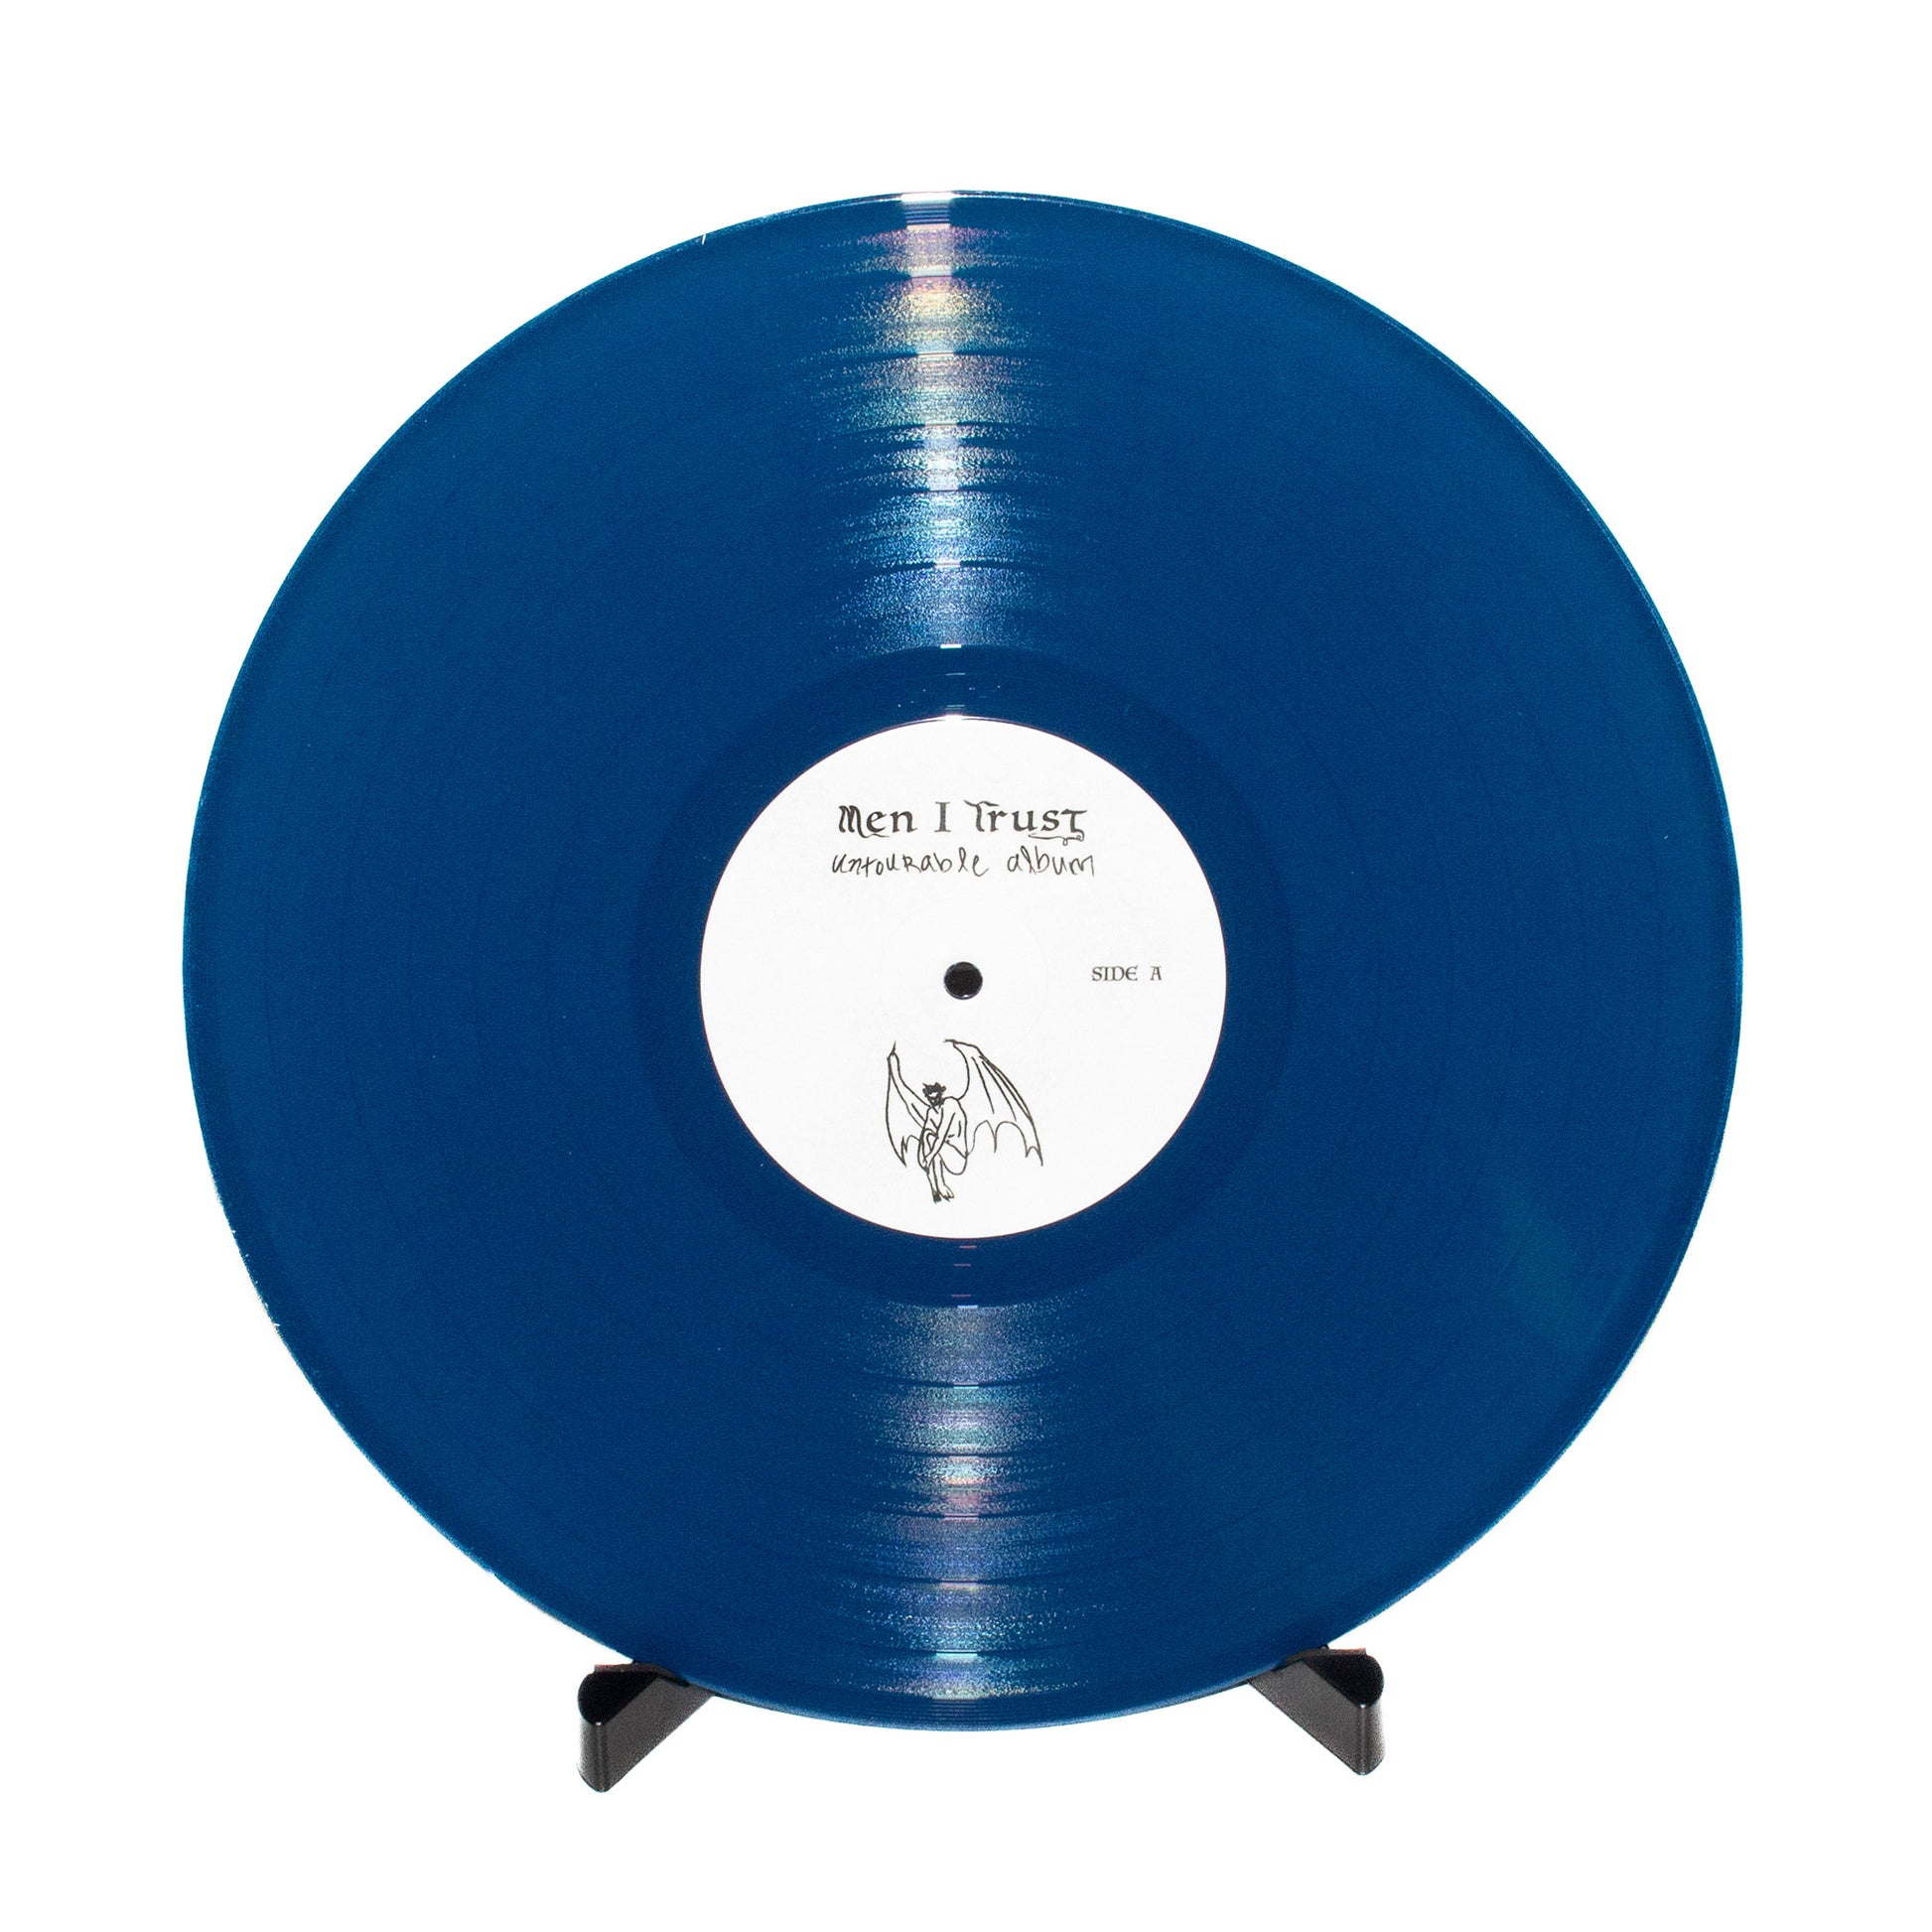 Vinyl - Untourable Album - Blue Variant